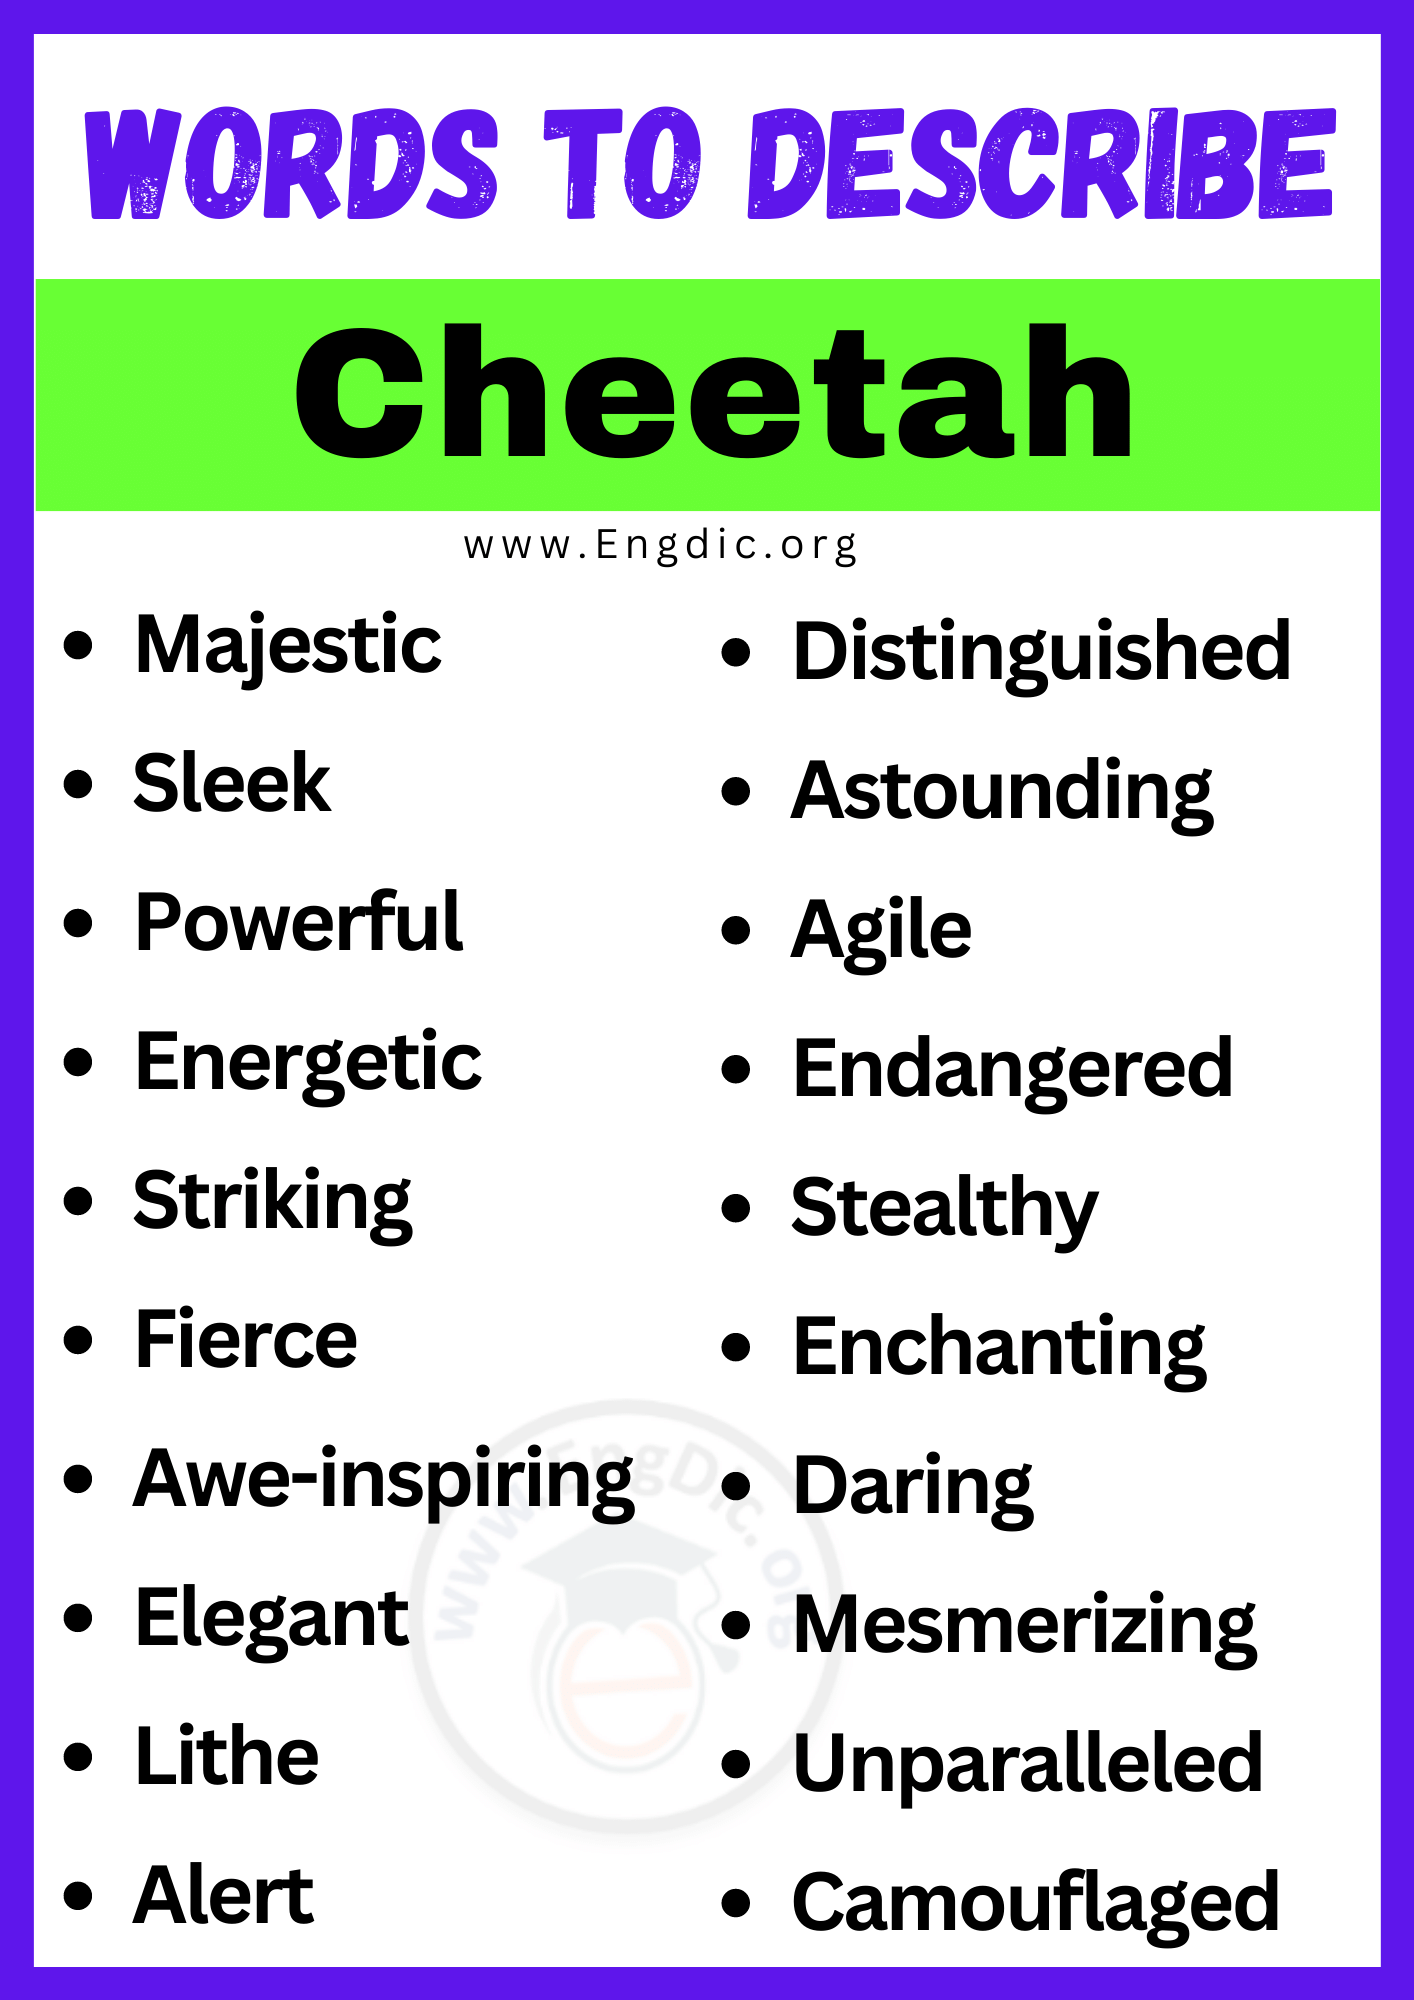 Words to Describe Cheetah